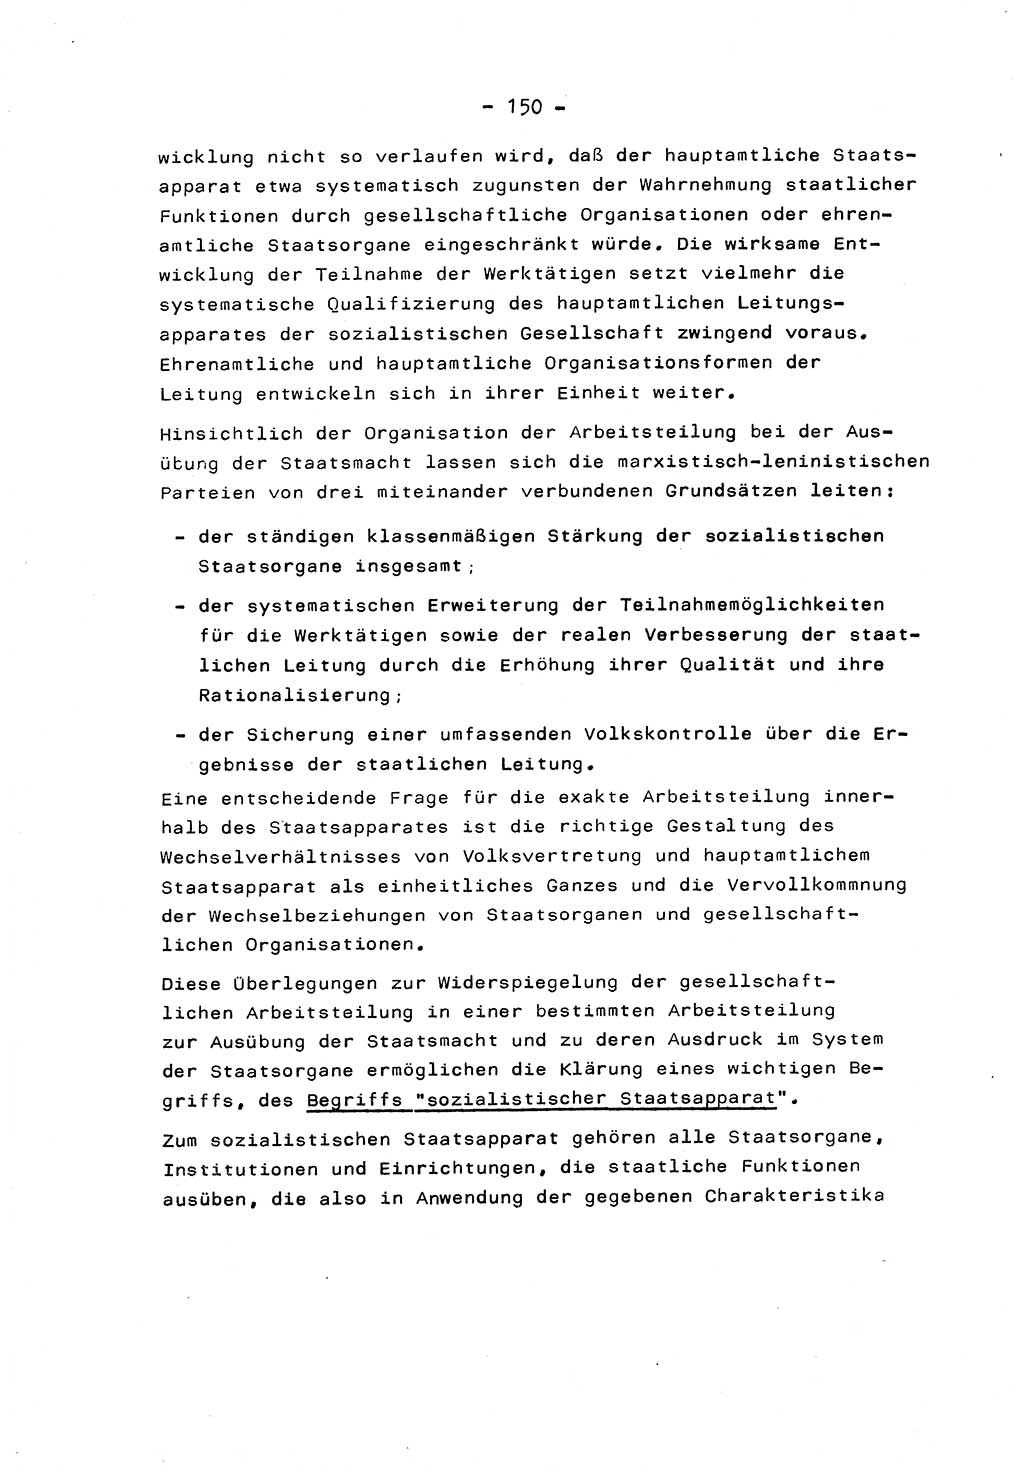 Marxistisch-leninistische Staats- und Rechtstheorie [Deutsche Demokratische Republik (DDR)] 1975, Seite 150 (ML St.-R.-Th. DDR 1975, S. 150)